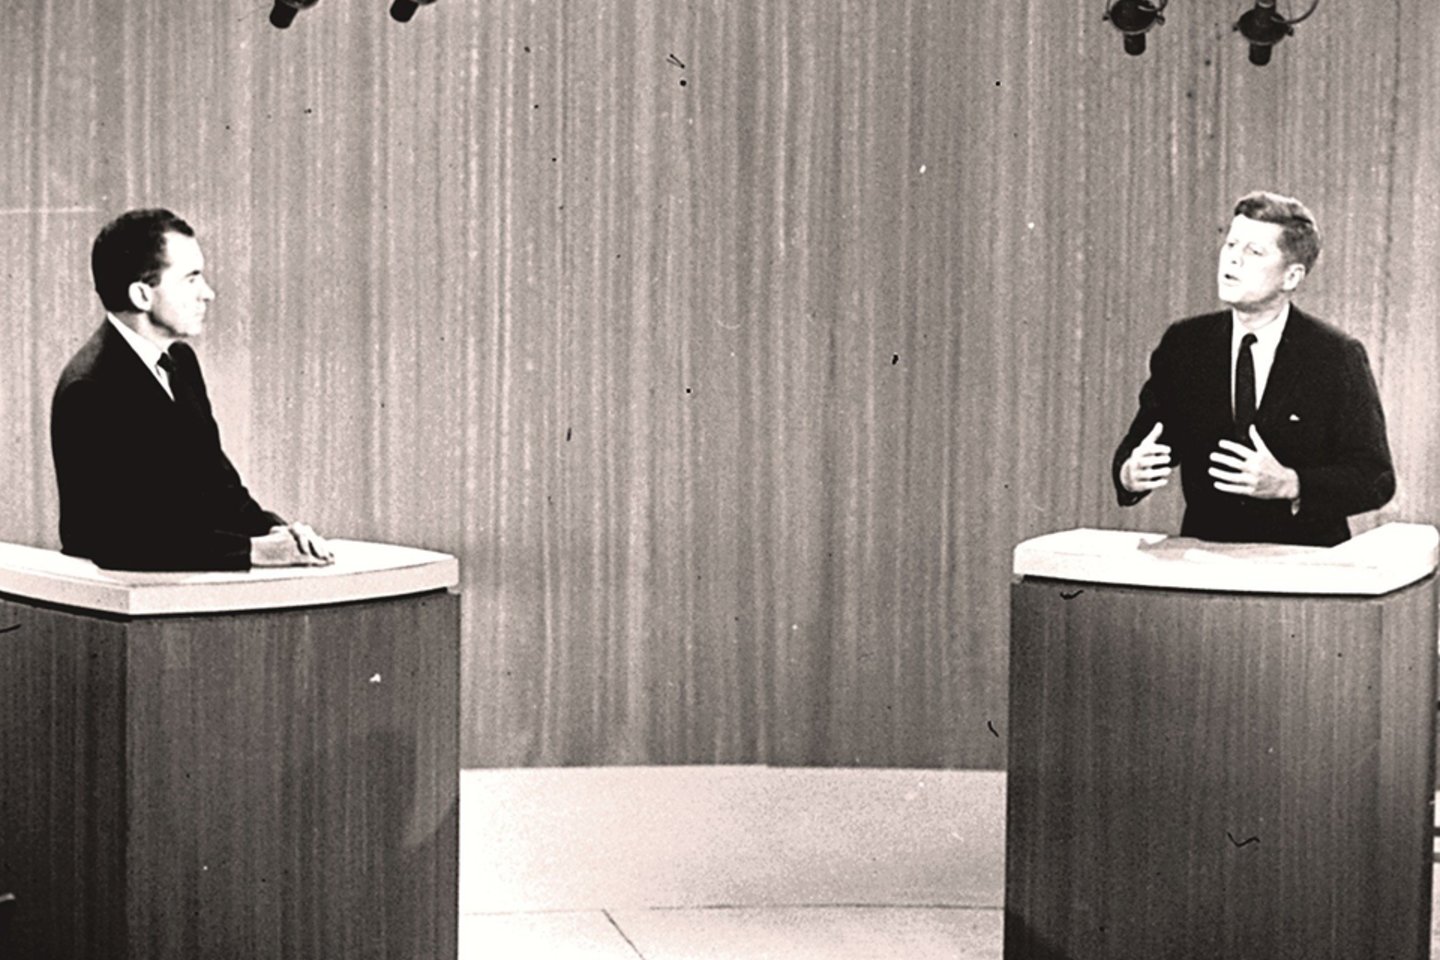 Roko žvaigždžių makiažas buvo skirtas scenai. Politikai grimu bruožus pabrėžia nuo tada, kai buvo surengti pirmi televizijos debatai tarp R.Nixono ir J.F.Kennedy.<br>AP/„Scanpix“ nuotr.